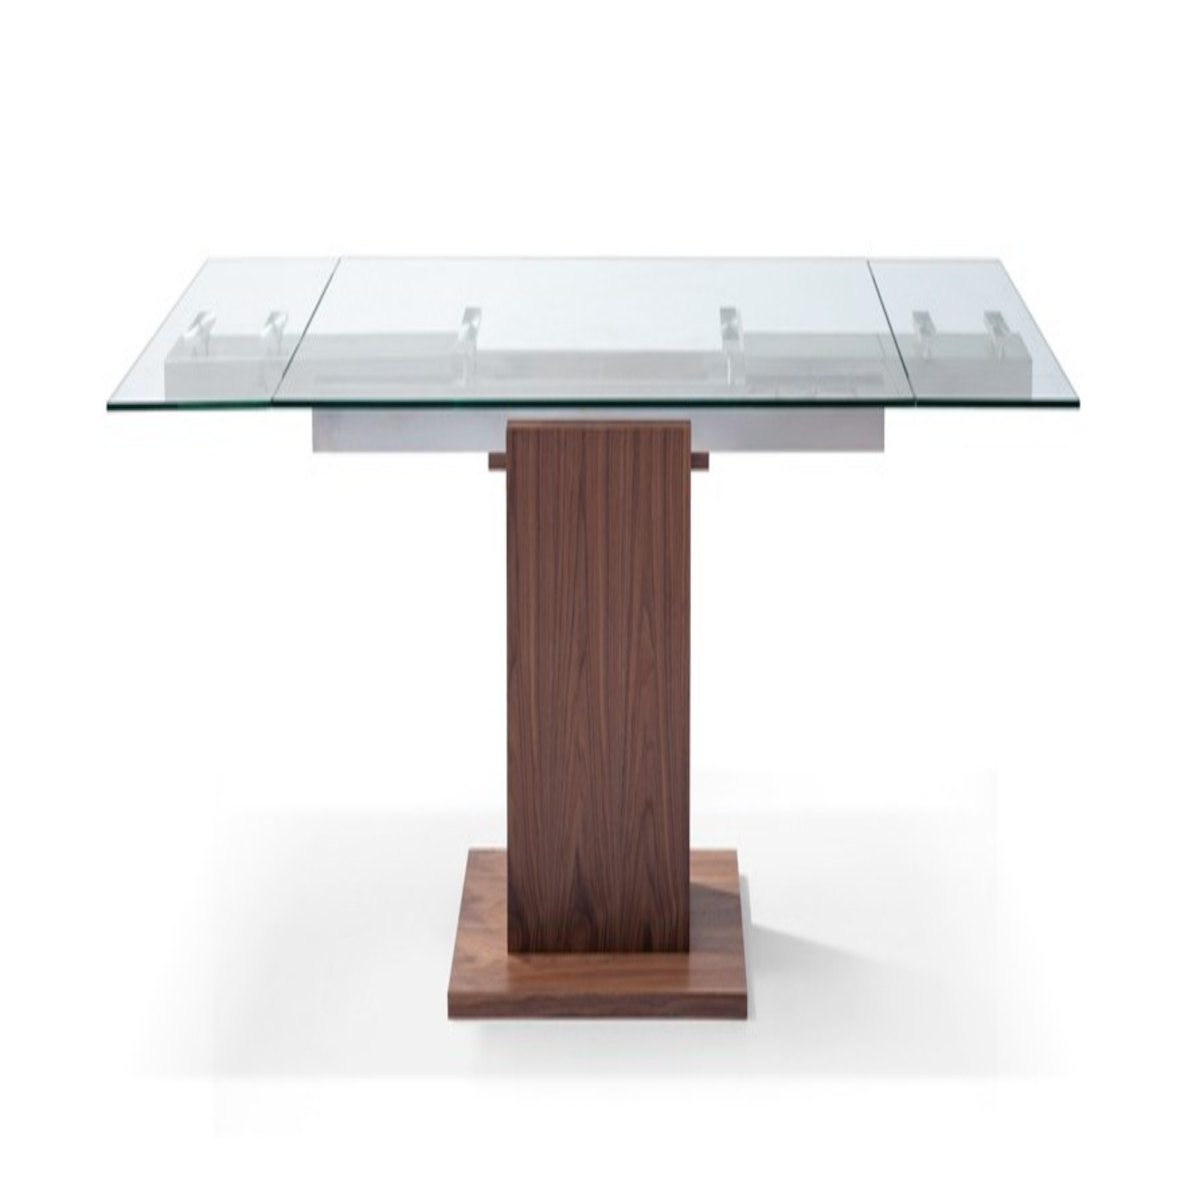 Whiteline Modern Living Pilastro Extendable Dining Table DT1275-WLT